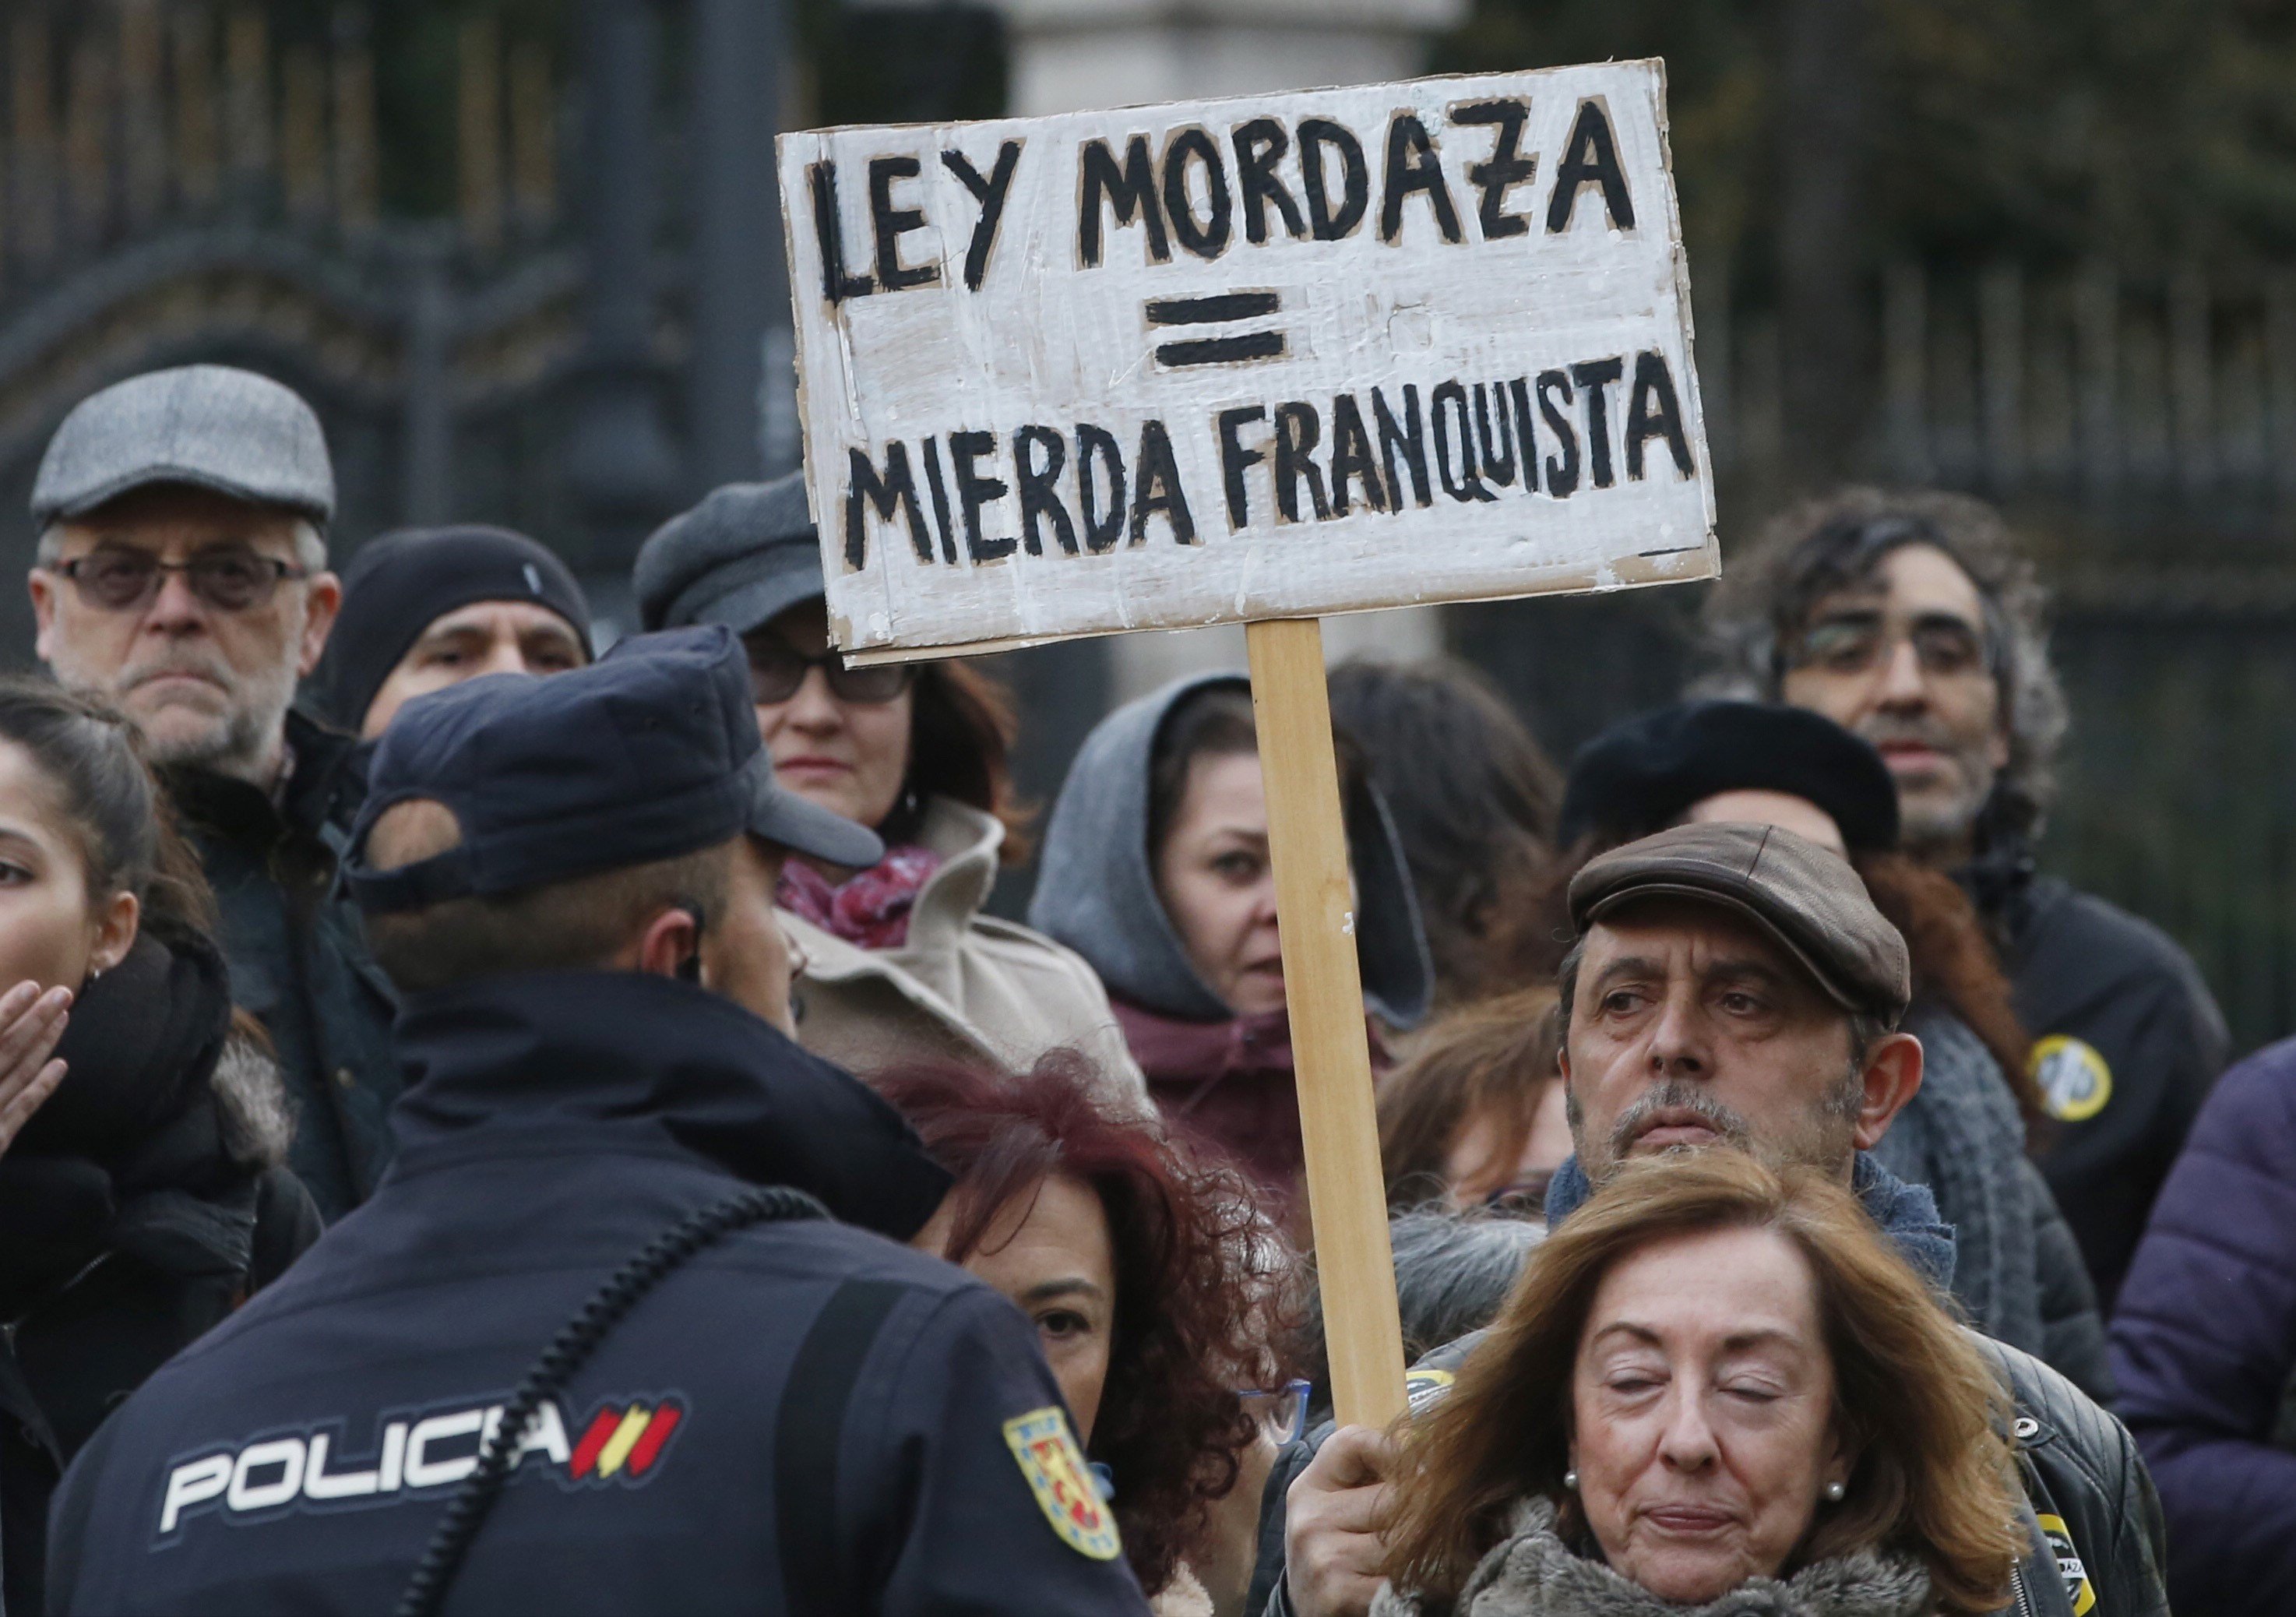 PSOE i Podemos acorden com reformar la llei mordassa: aquestes són les claus